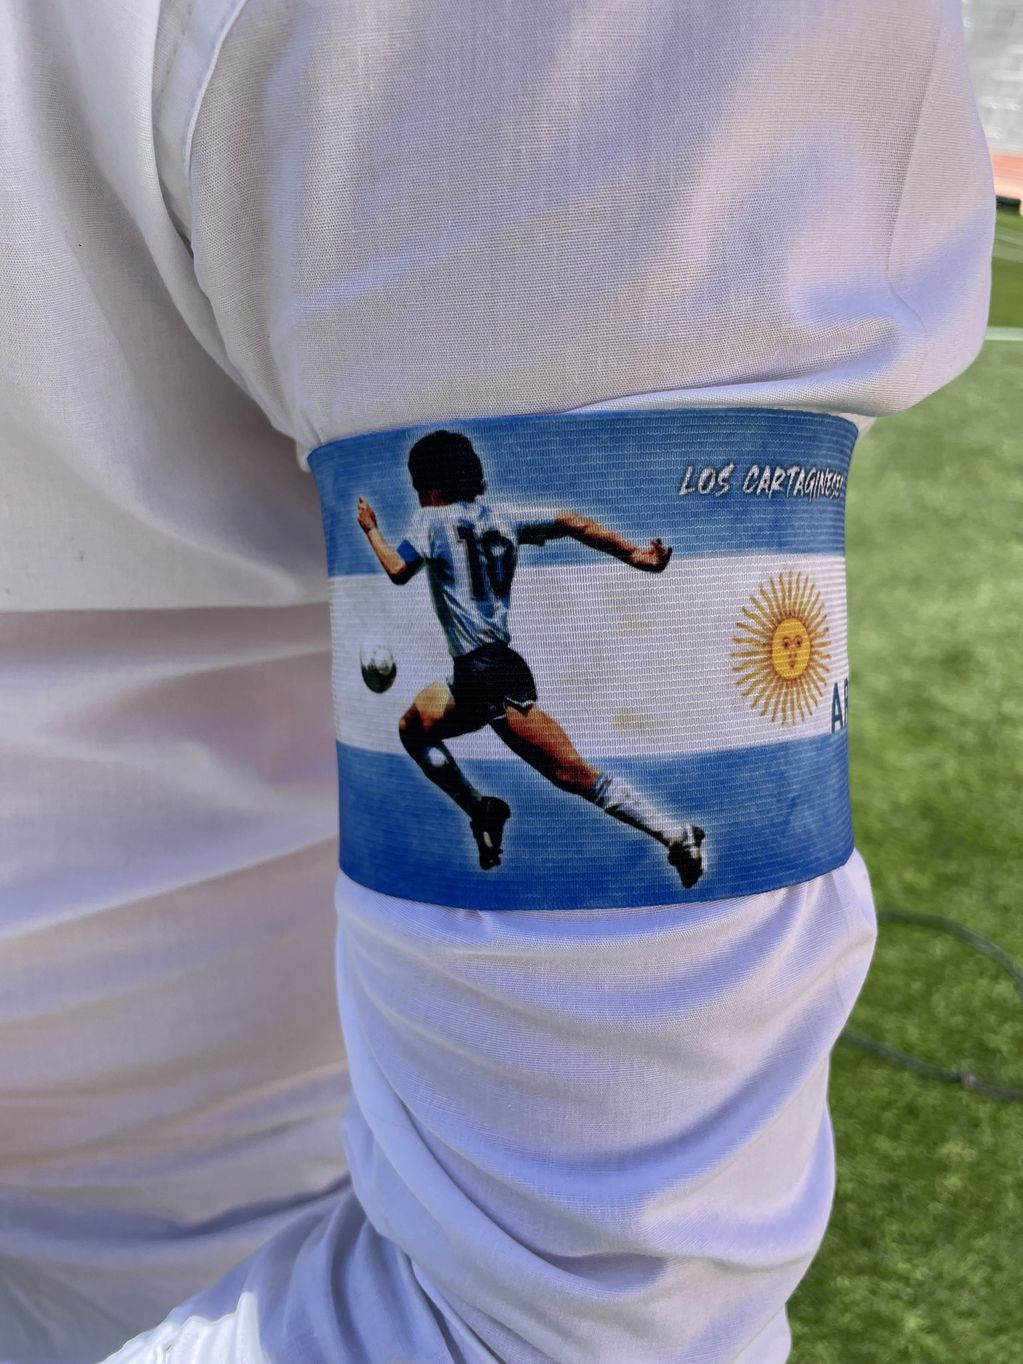 Así será la cinta de capitán que usarán en el partido entre Boca y Argentinos (Twitter/@Tato_Aguilera)